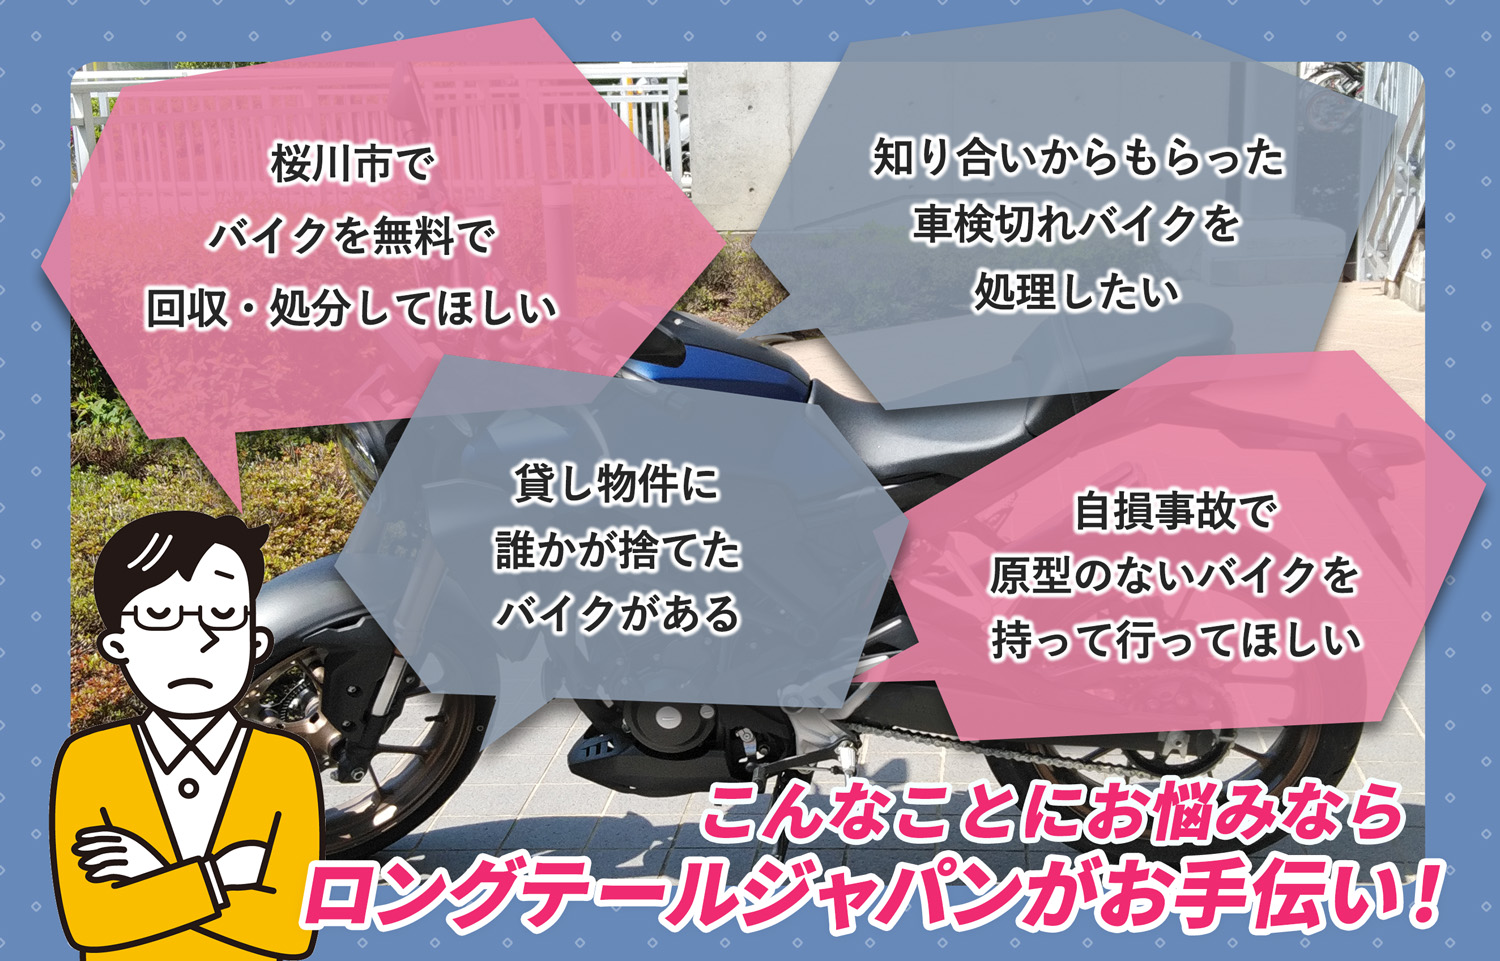 桜川市でこんなバイクの処分にお困りでしたらバイク無料回収処分隊がお手伝いいたします。